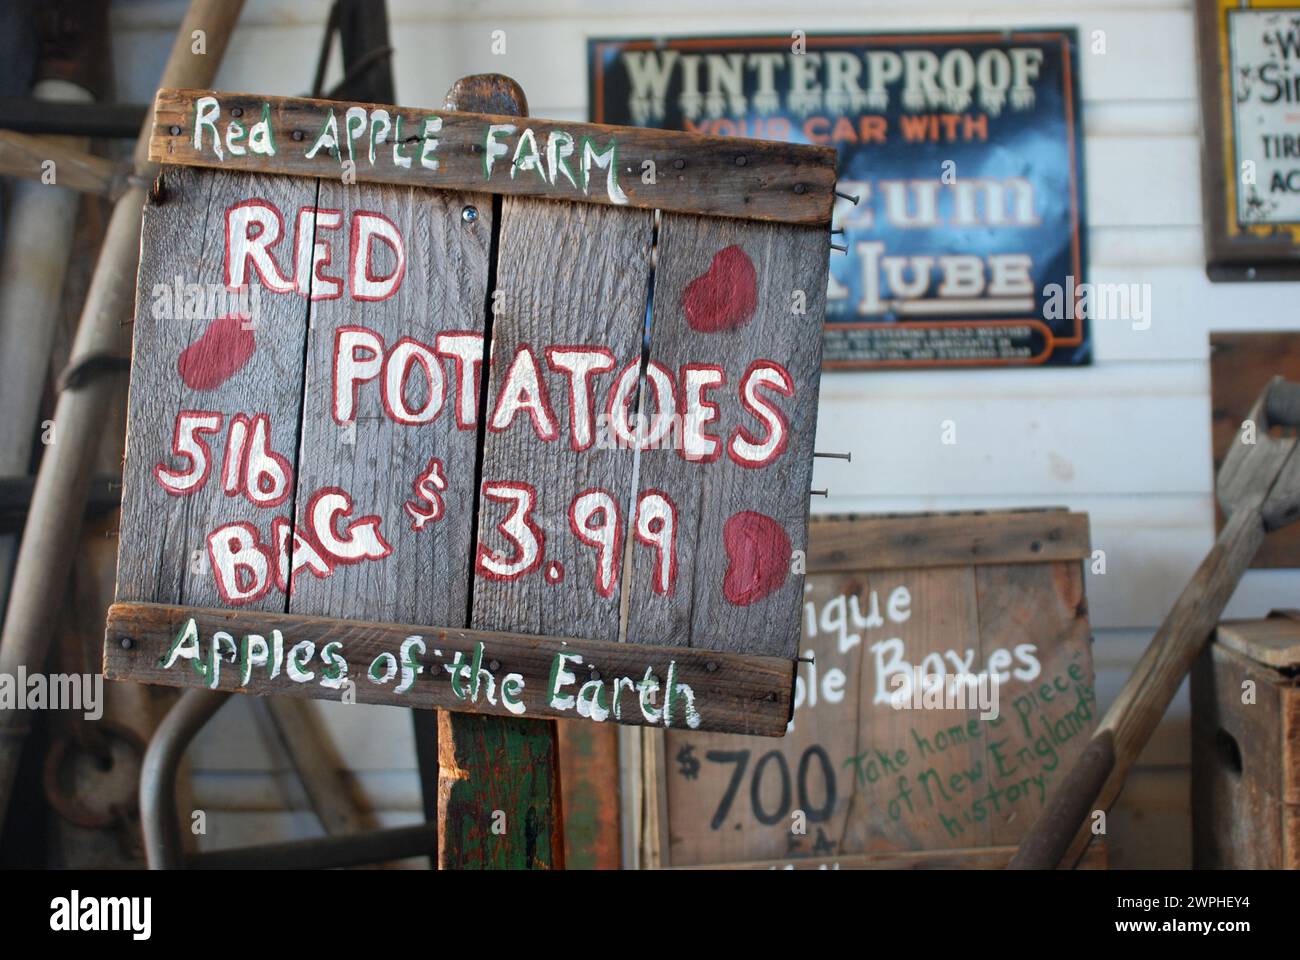 Insegna delle patate rosse presso la Red Apple Farm, Massachusetts USA Foto Stock